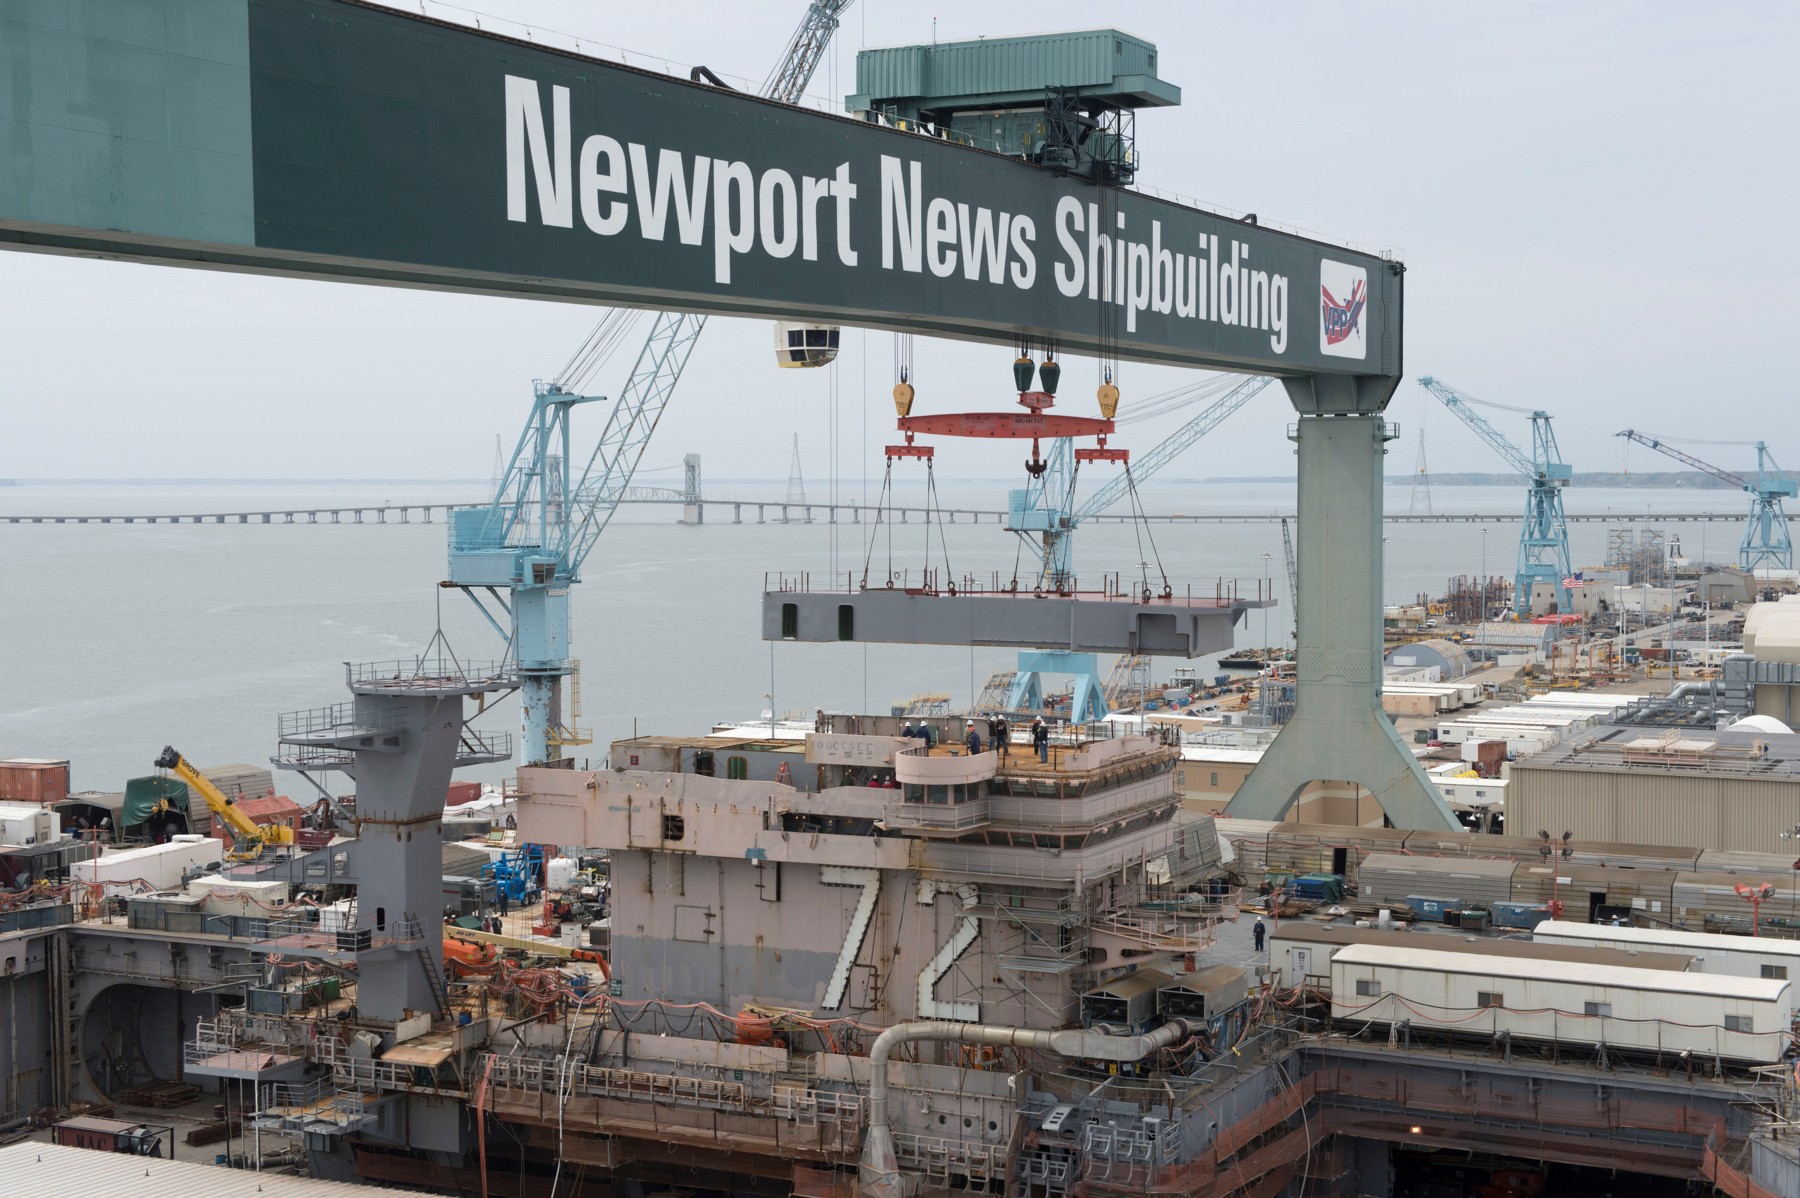 cvn-72 uss abraham lincoln nimitz class aircraft carrier us navy newport news shipbuilding p04